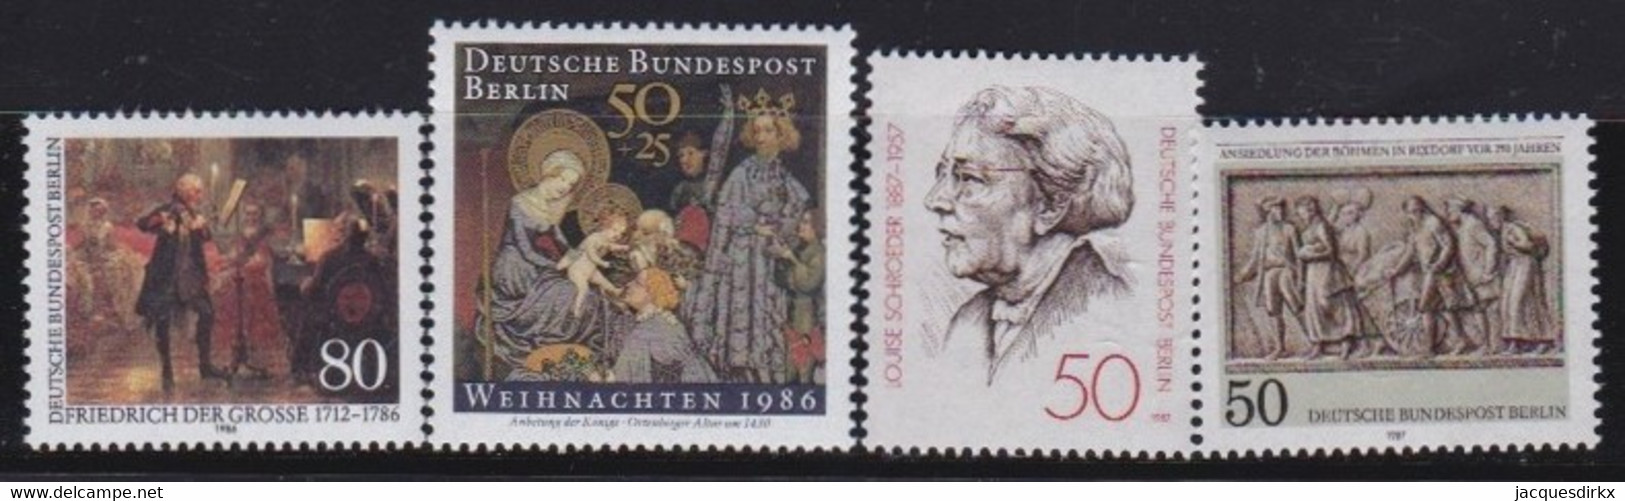 Berlin   .    Michel     4 Marken       .      **   .   Postfrisch - Unused Stamps